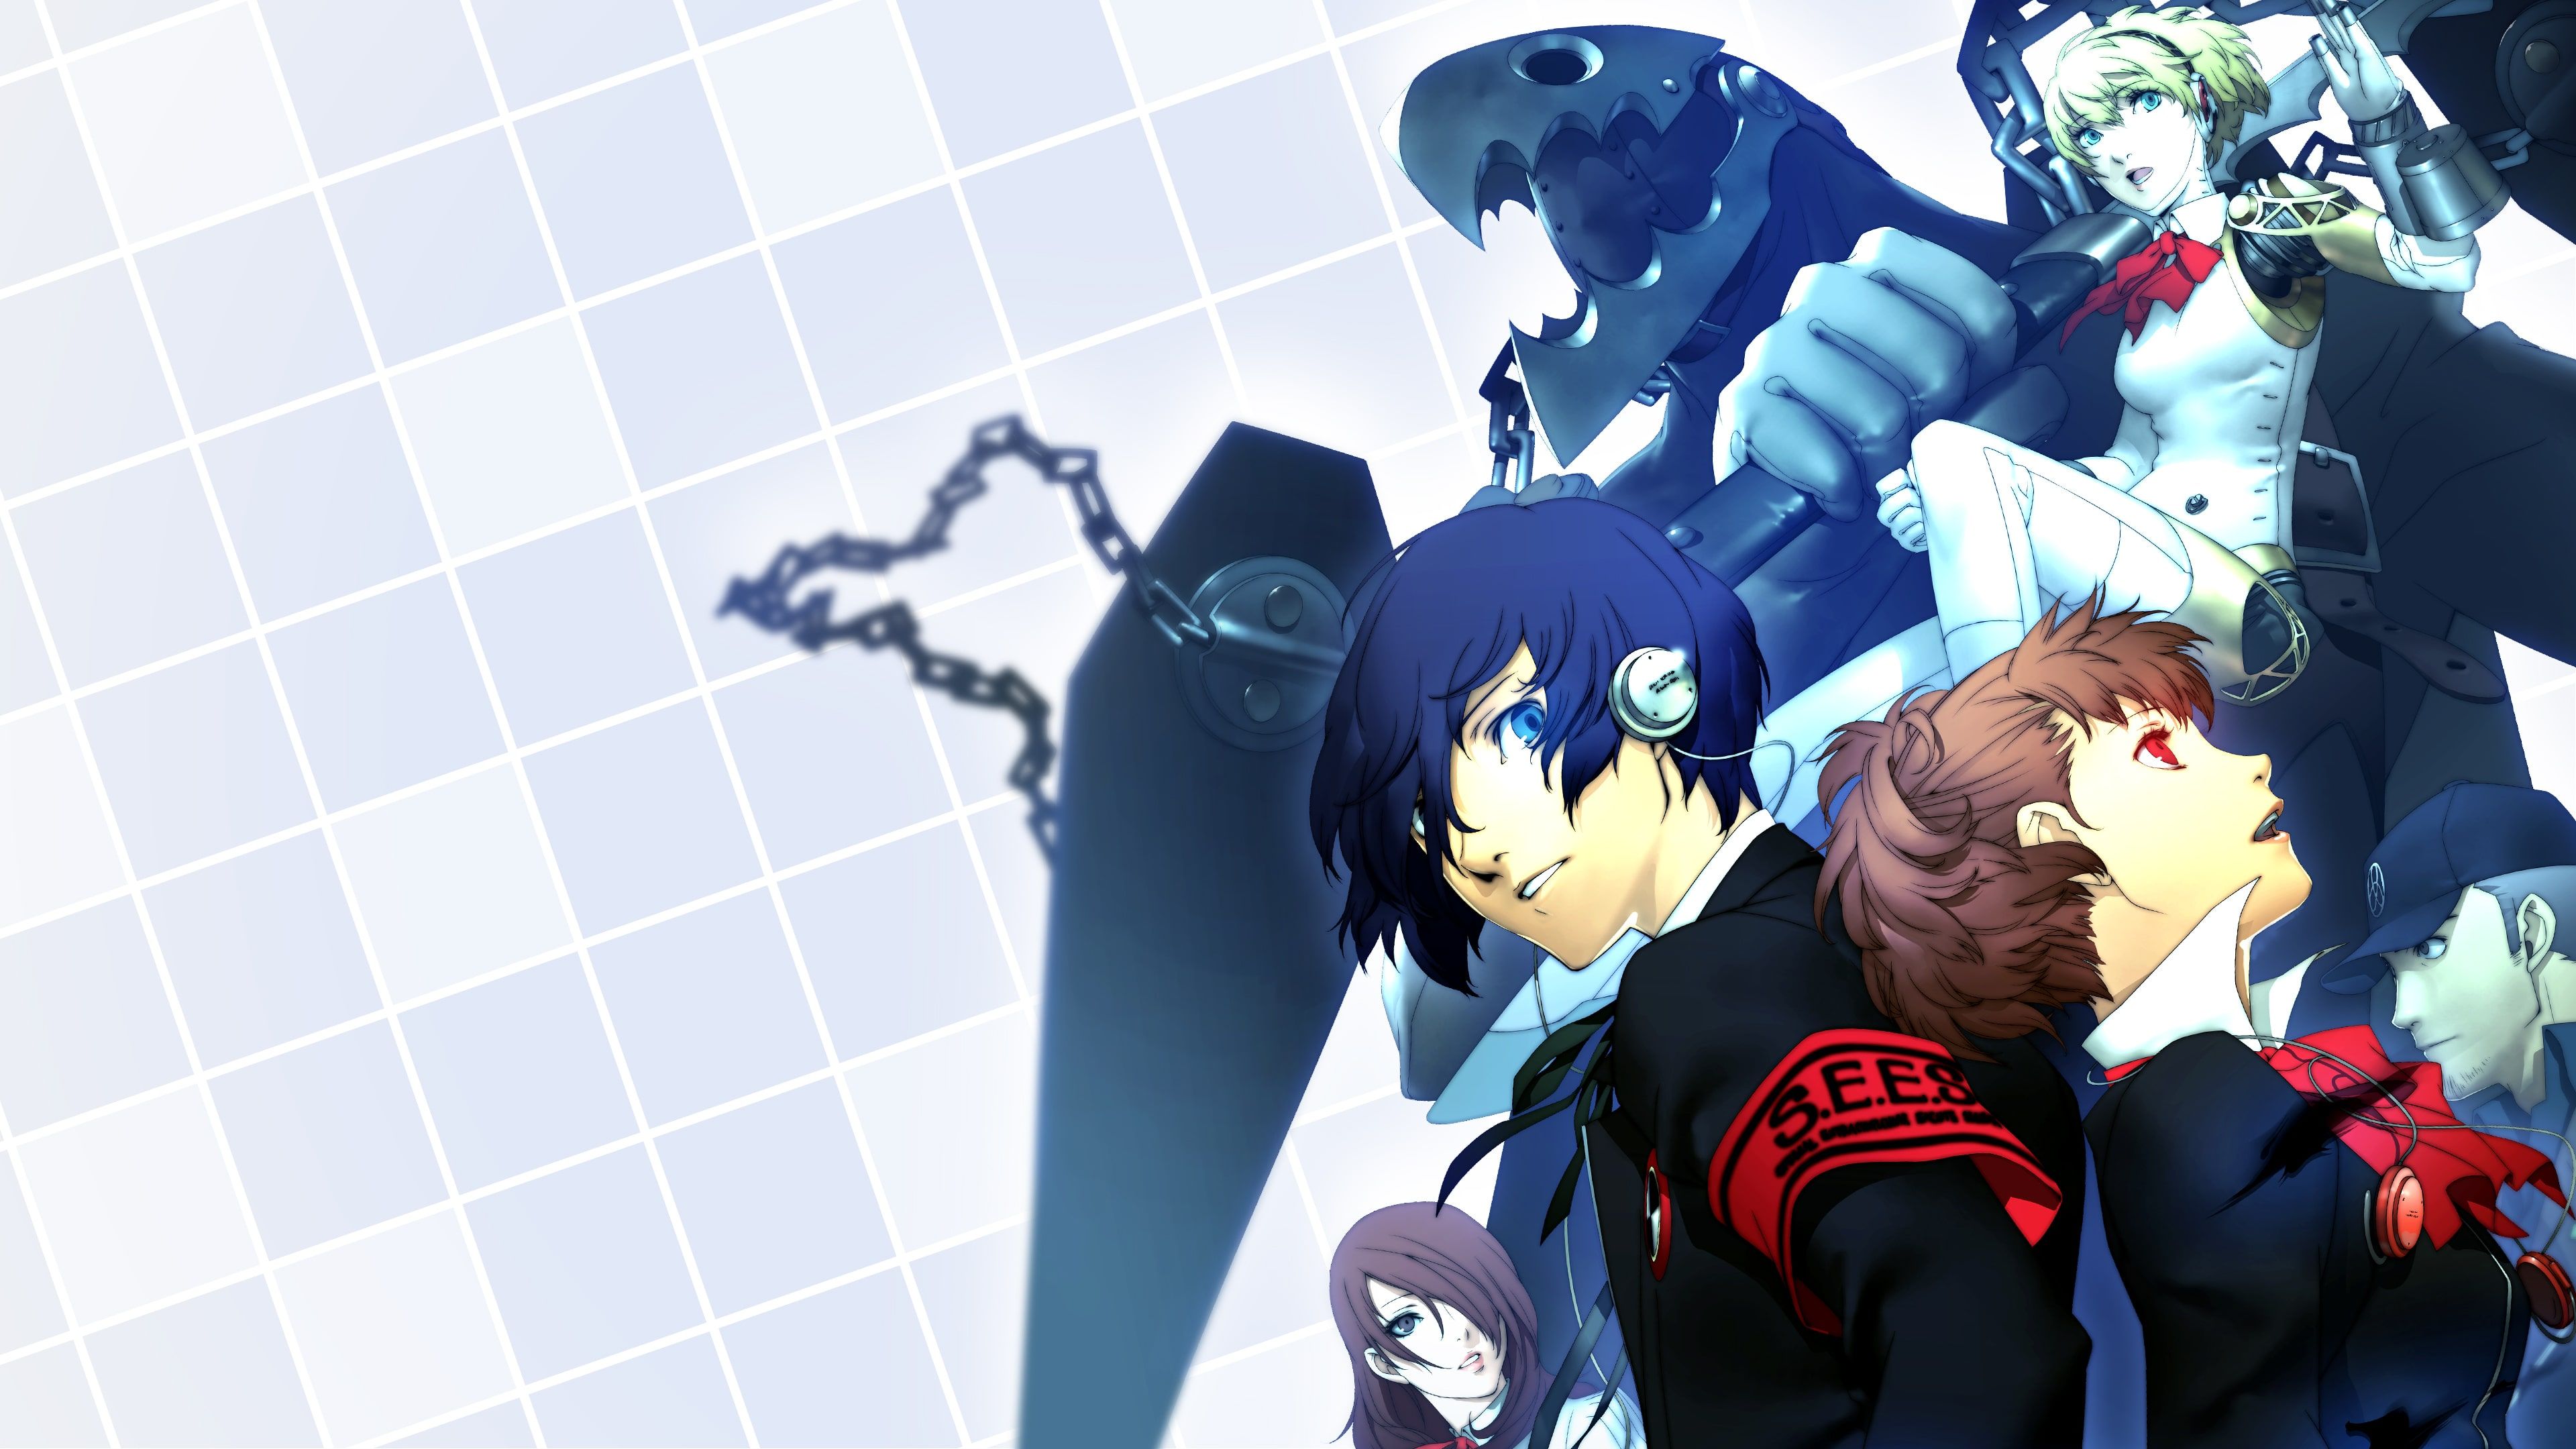 Persona 3 Portable cover image